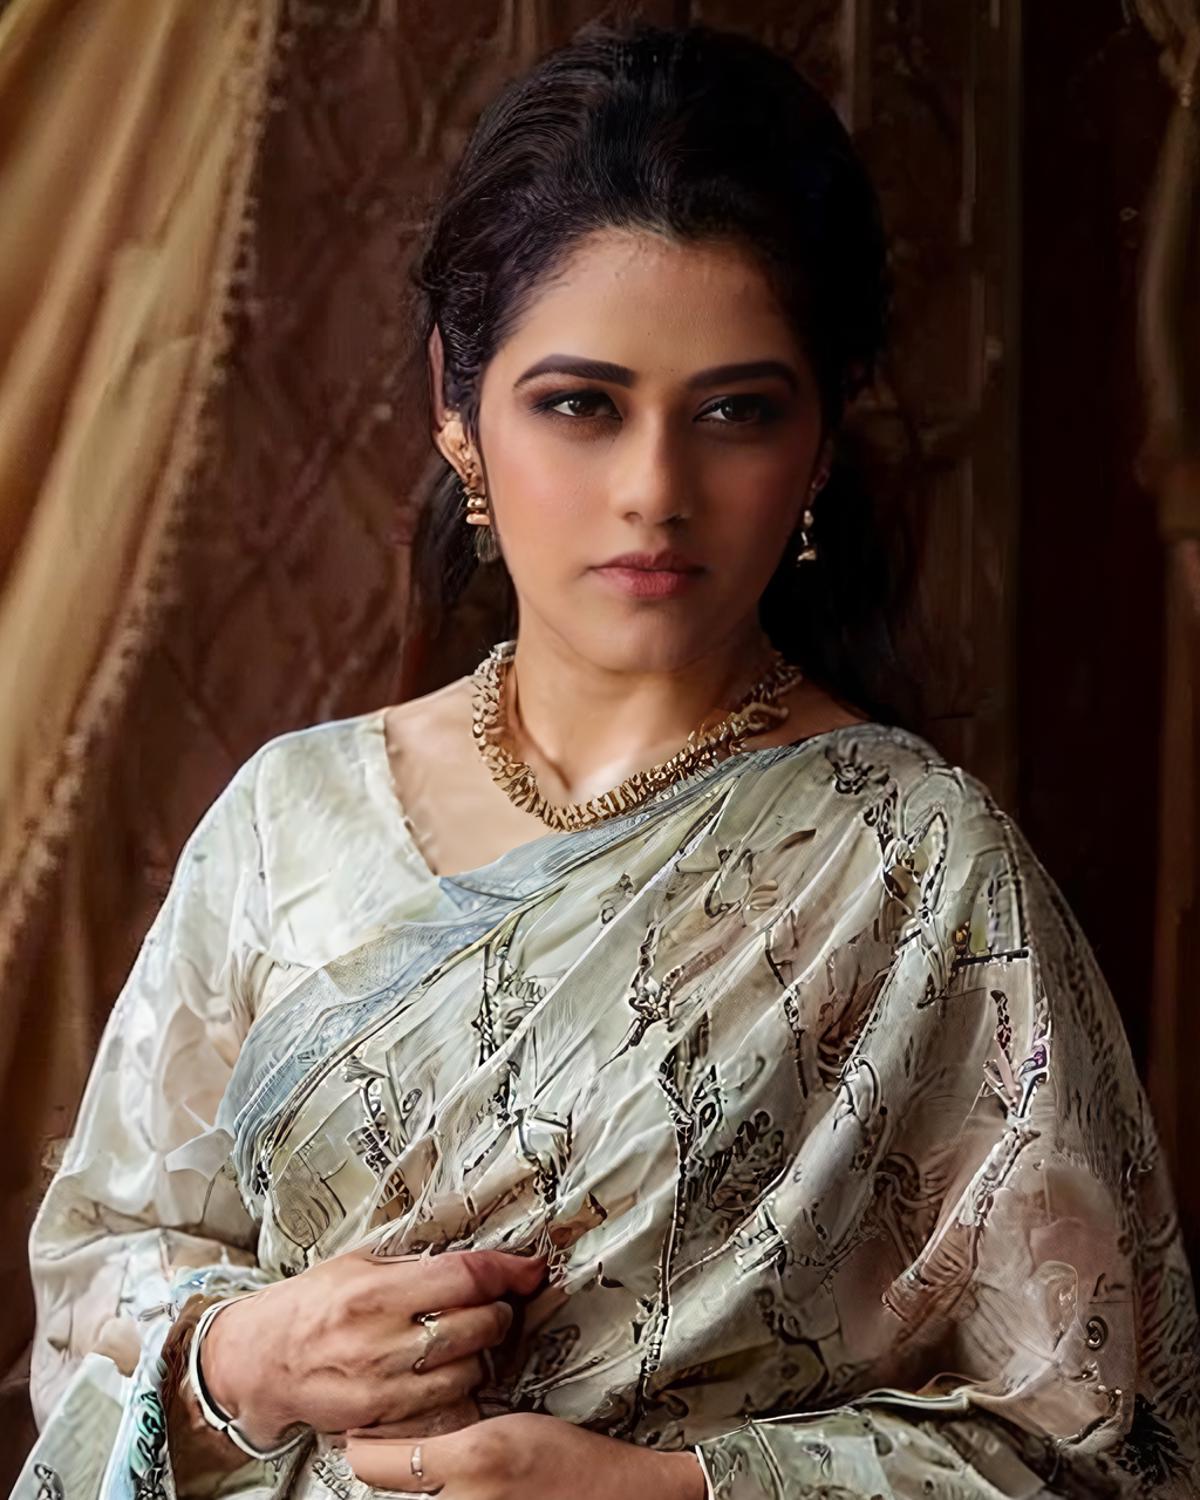 Girija Oak - Indian Actress (SD1.5) image by Desi_Cafe